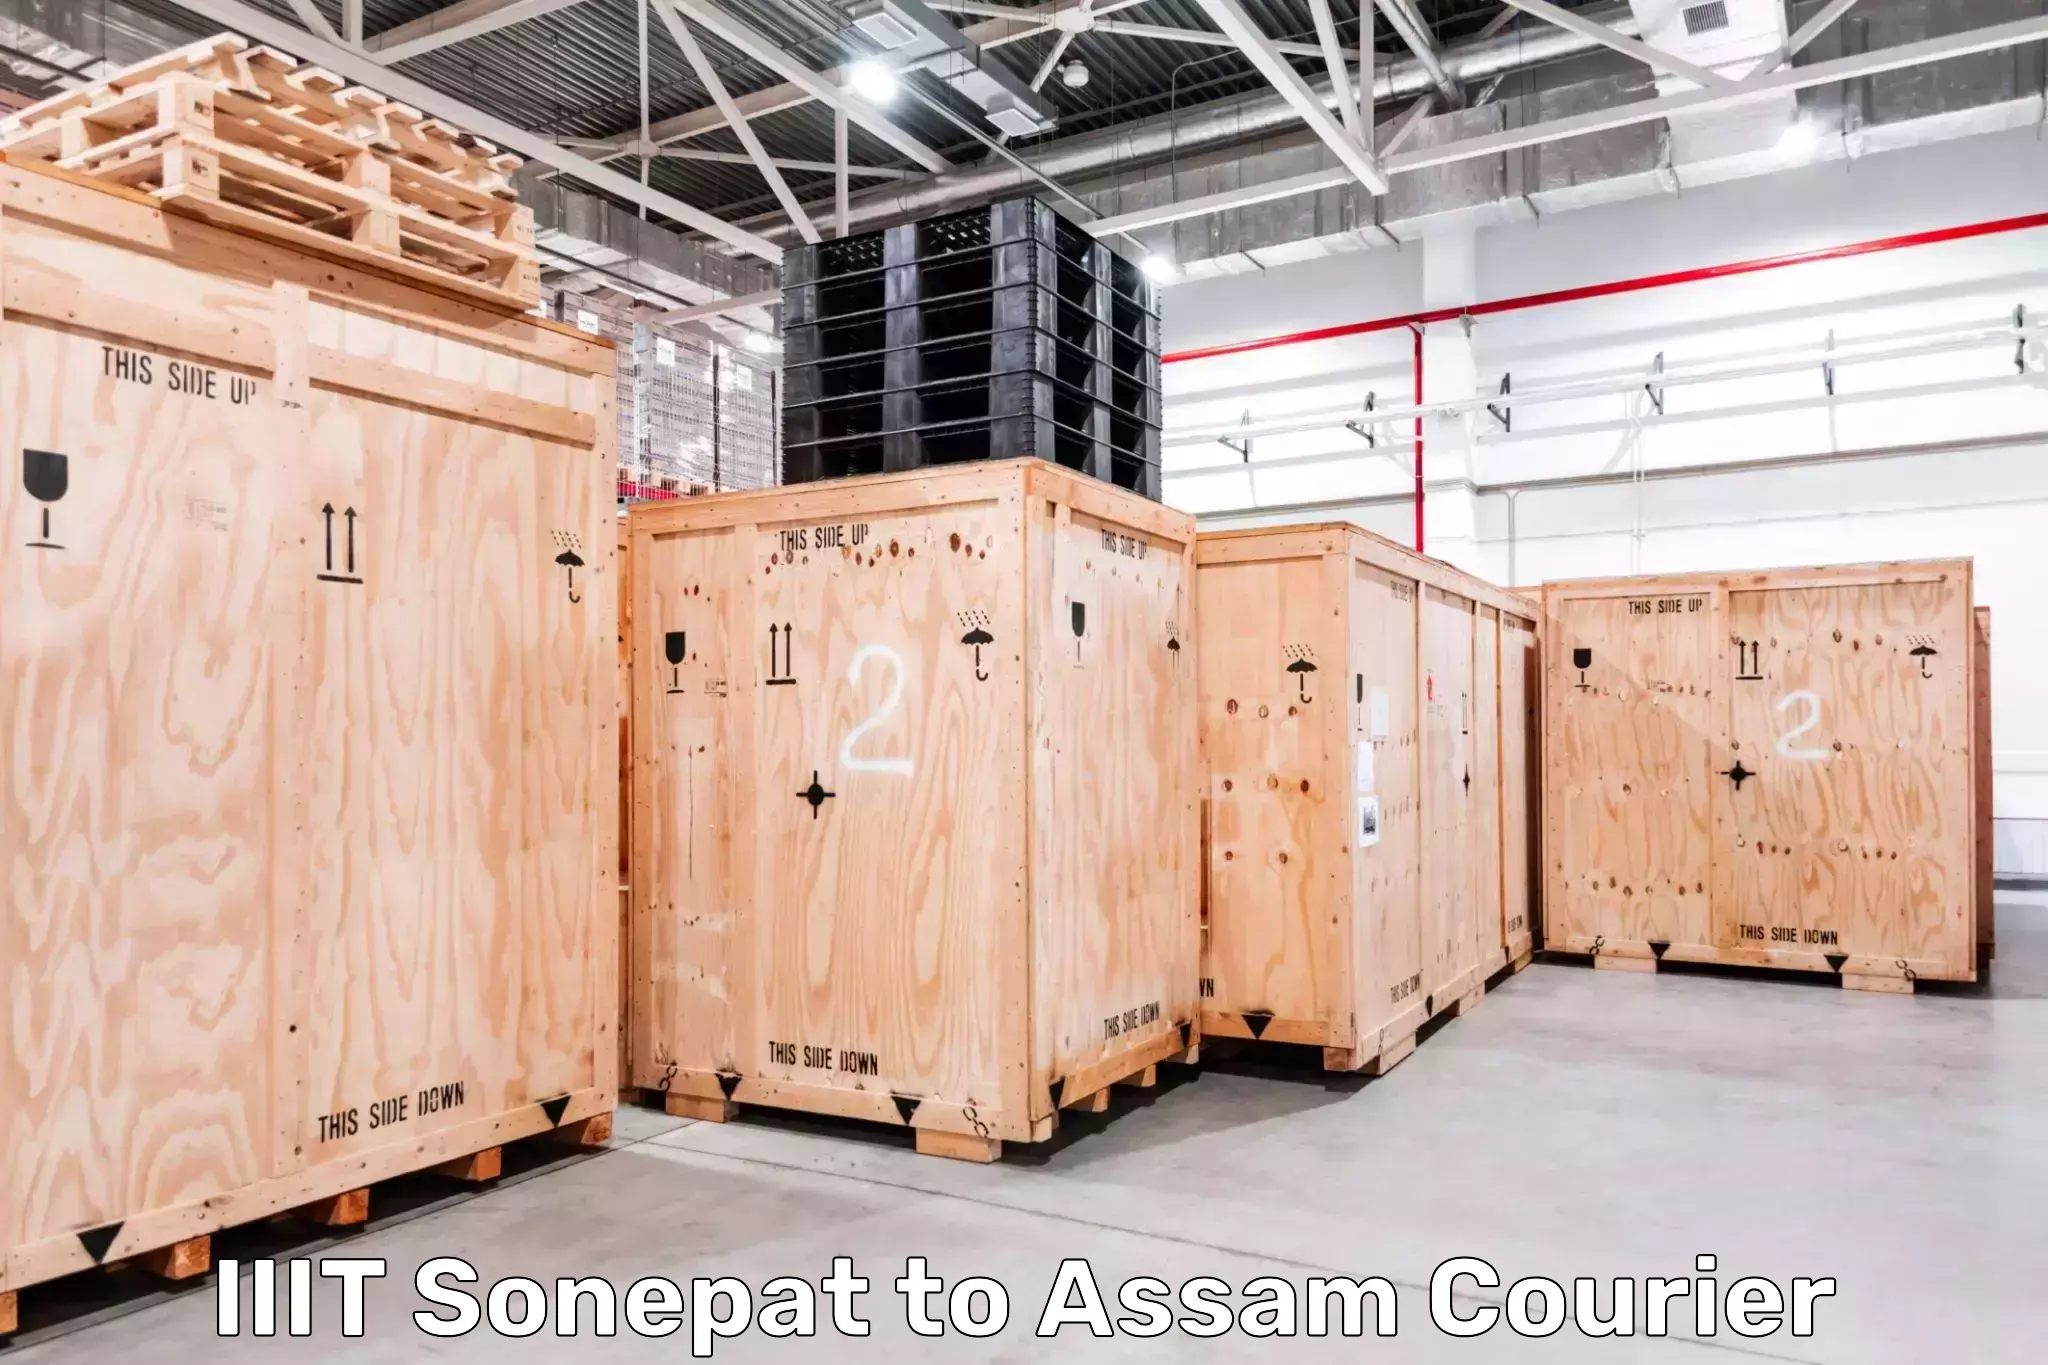 24-hour courier service IIIT Sonepat to Assam